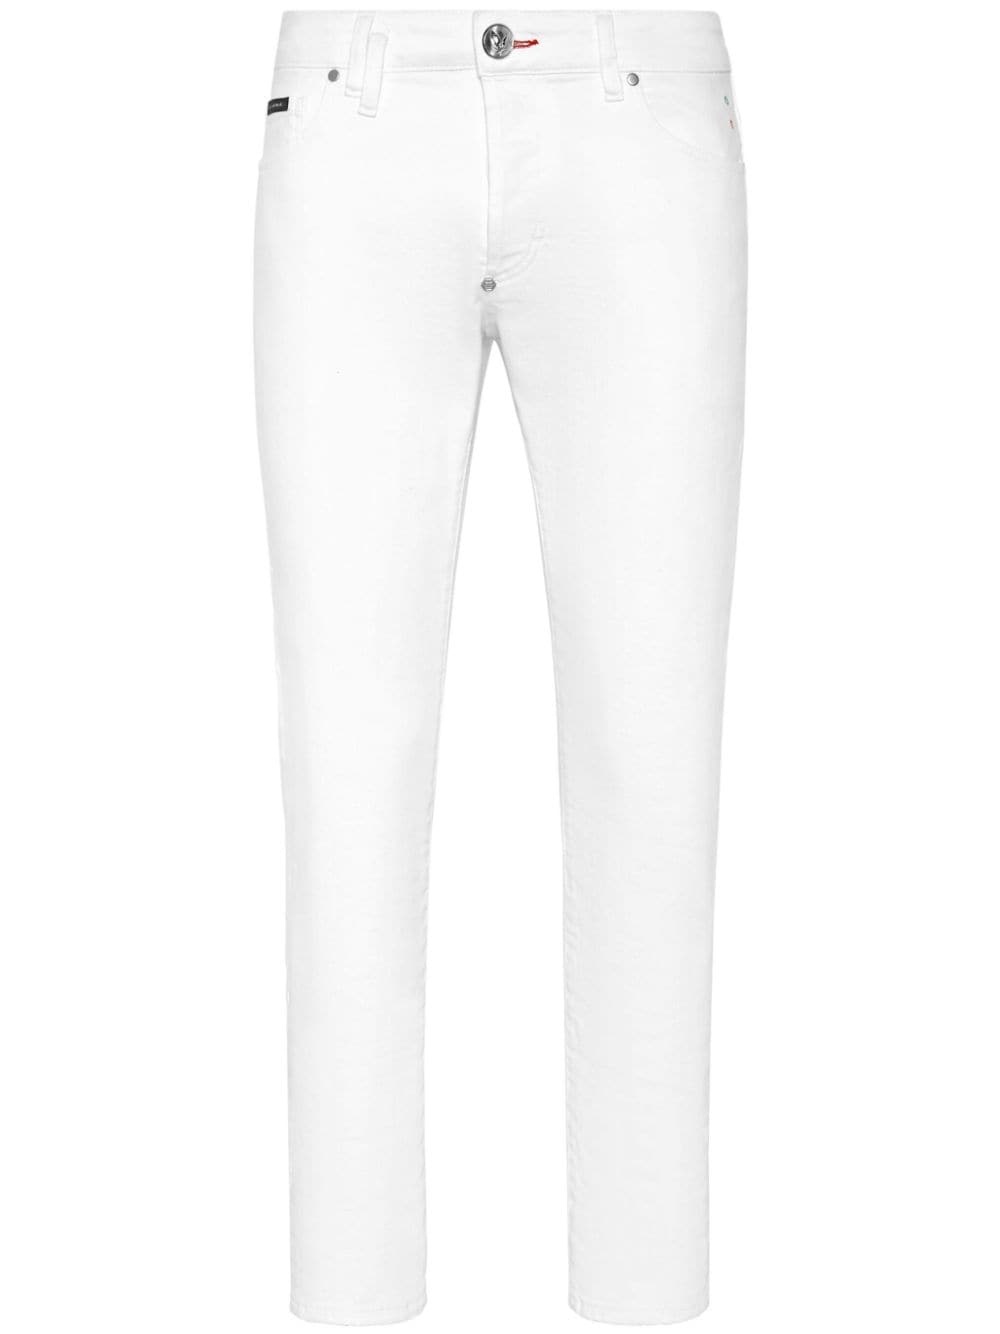 heart-appliquÃ© low-rise skinny jeans - 1